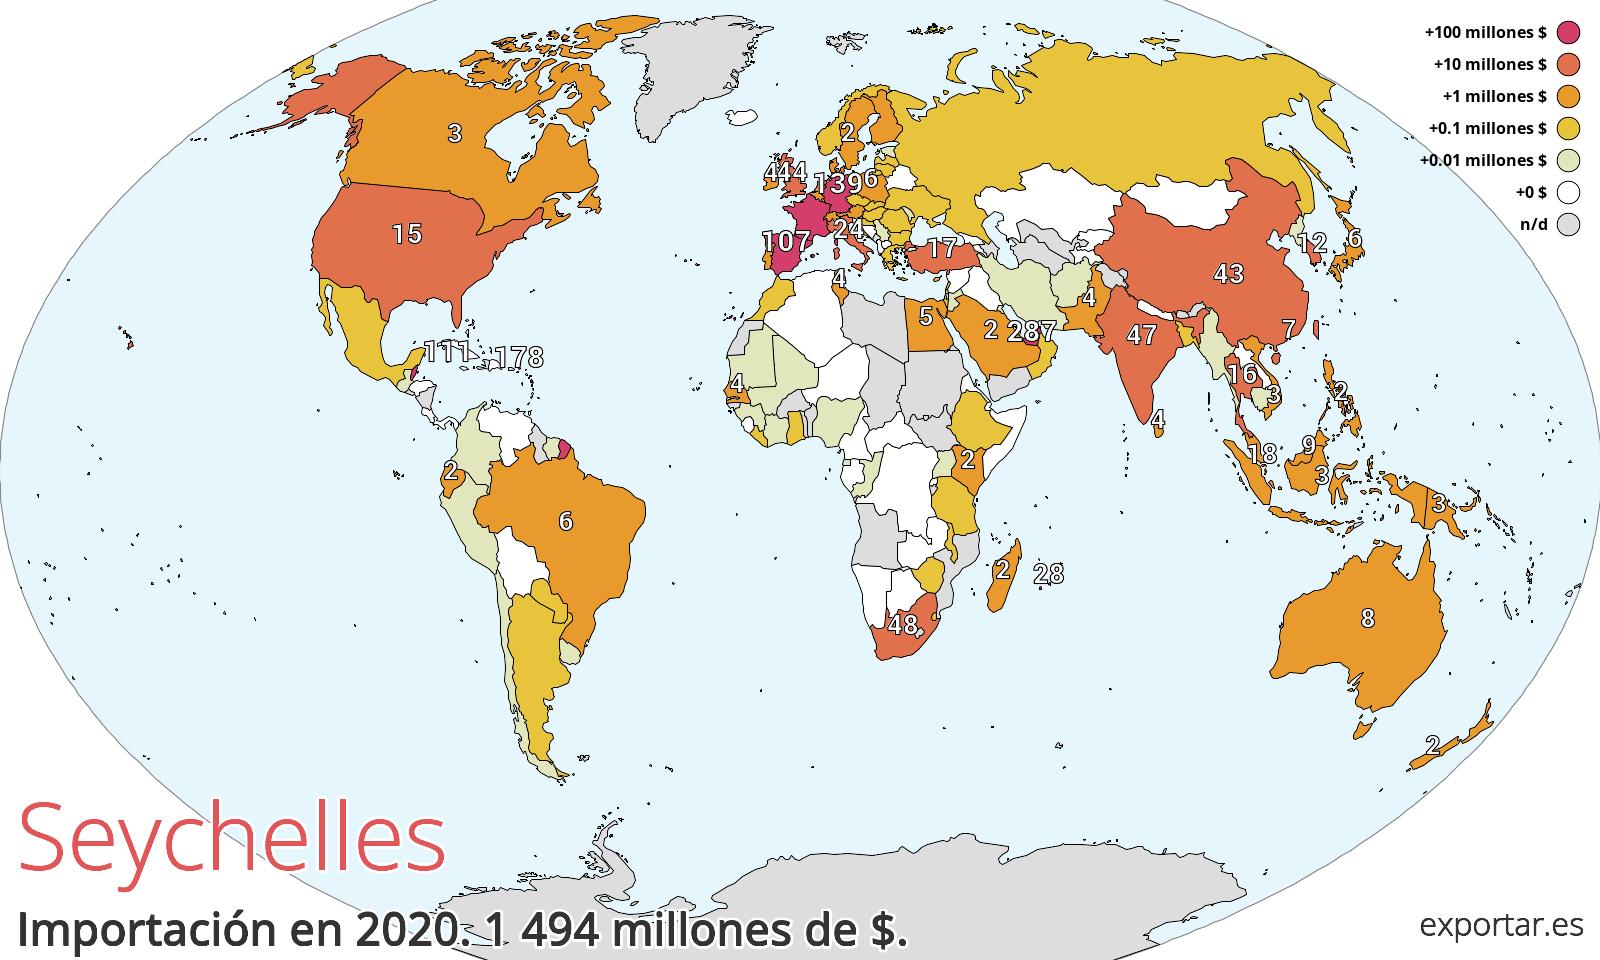 Mapa de importación de Seychelles en 2020.